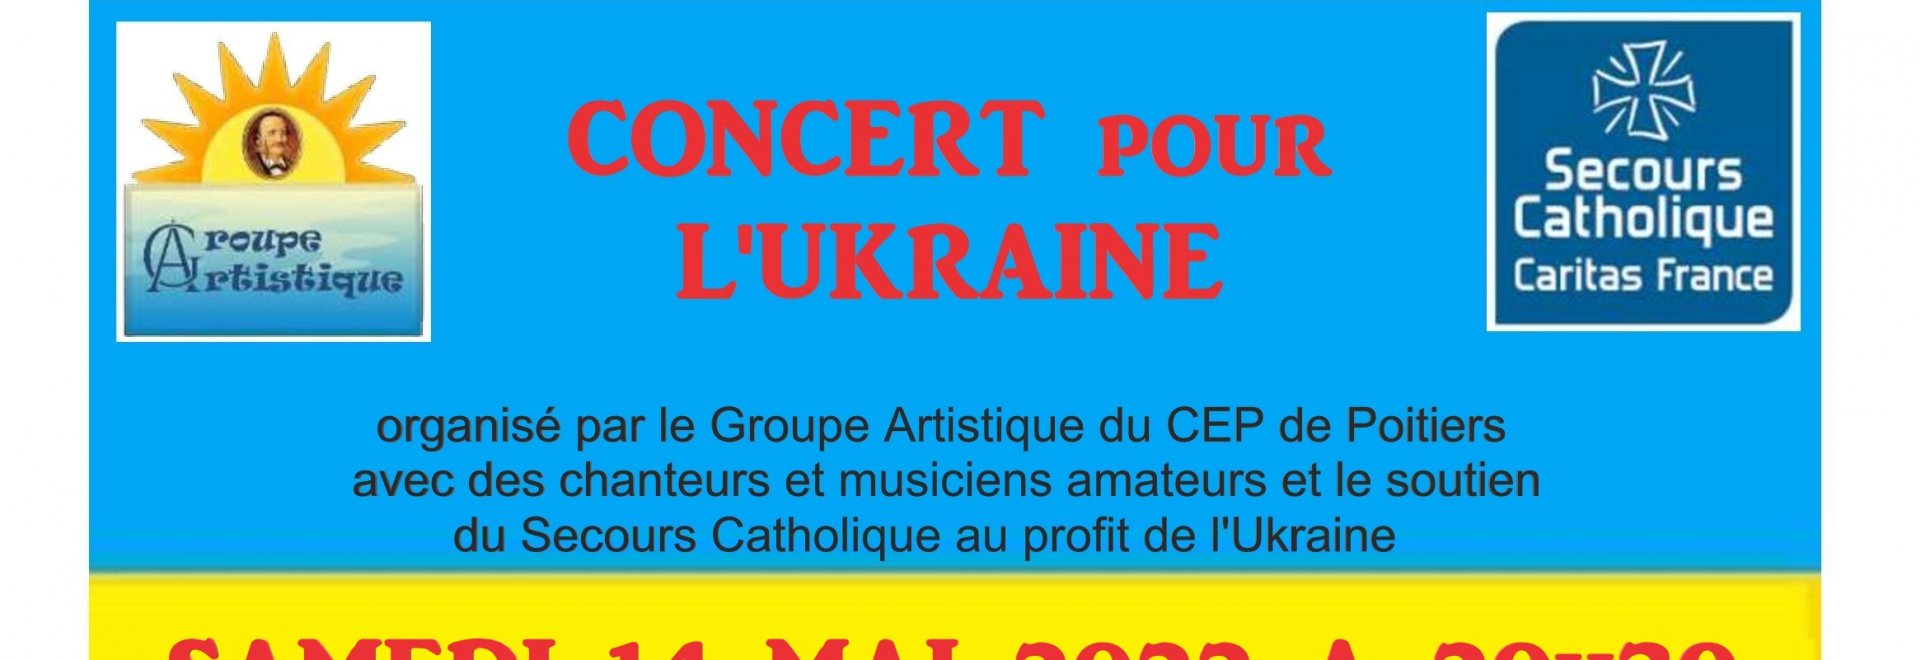 Concert en faveur de l'Ukraine, le 14 mai 2022 à 20h30, à Saint-Julien-l'Ars